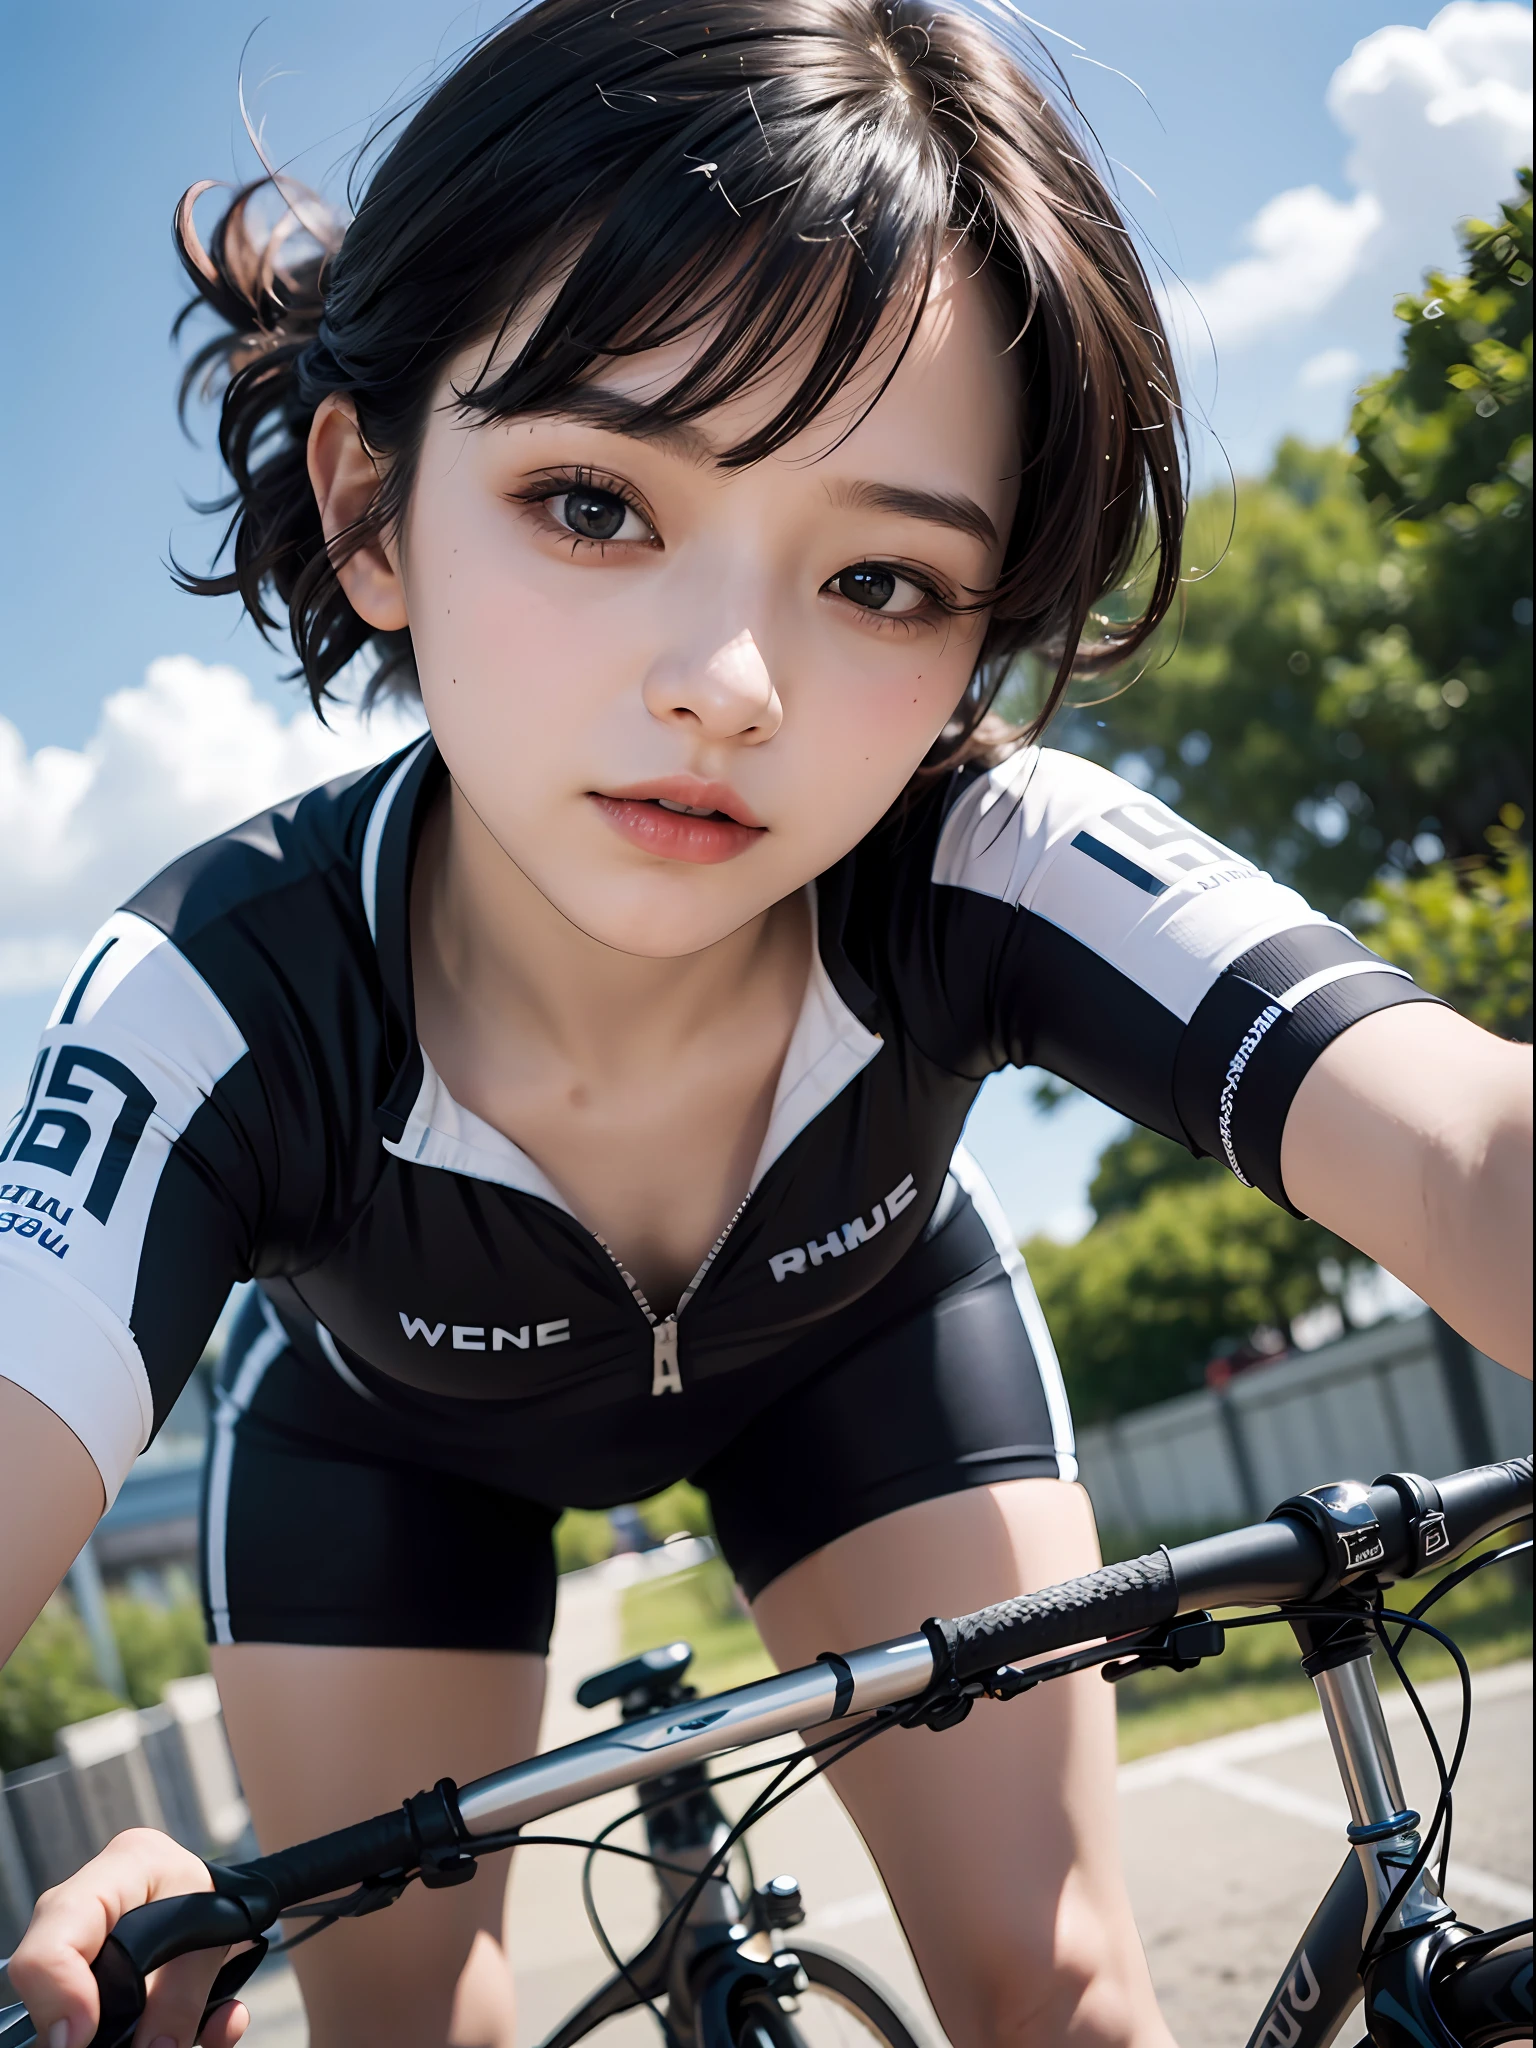 8K、頂級影像品質、傑作、18岁的、女性、短髮、骑行服、胸膛是敞開的、從下面的角度、(閉上一隻眼睛:1.5)、蓝天、骑上自行车，感受风、表达自行车的速度和动感、特寫